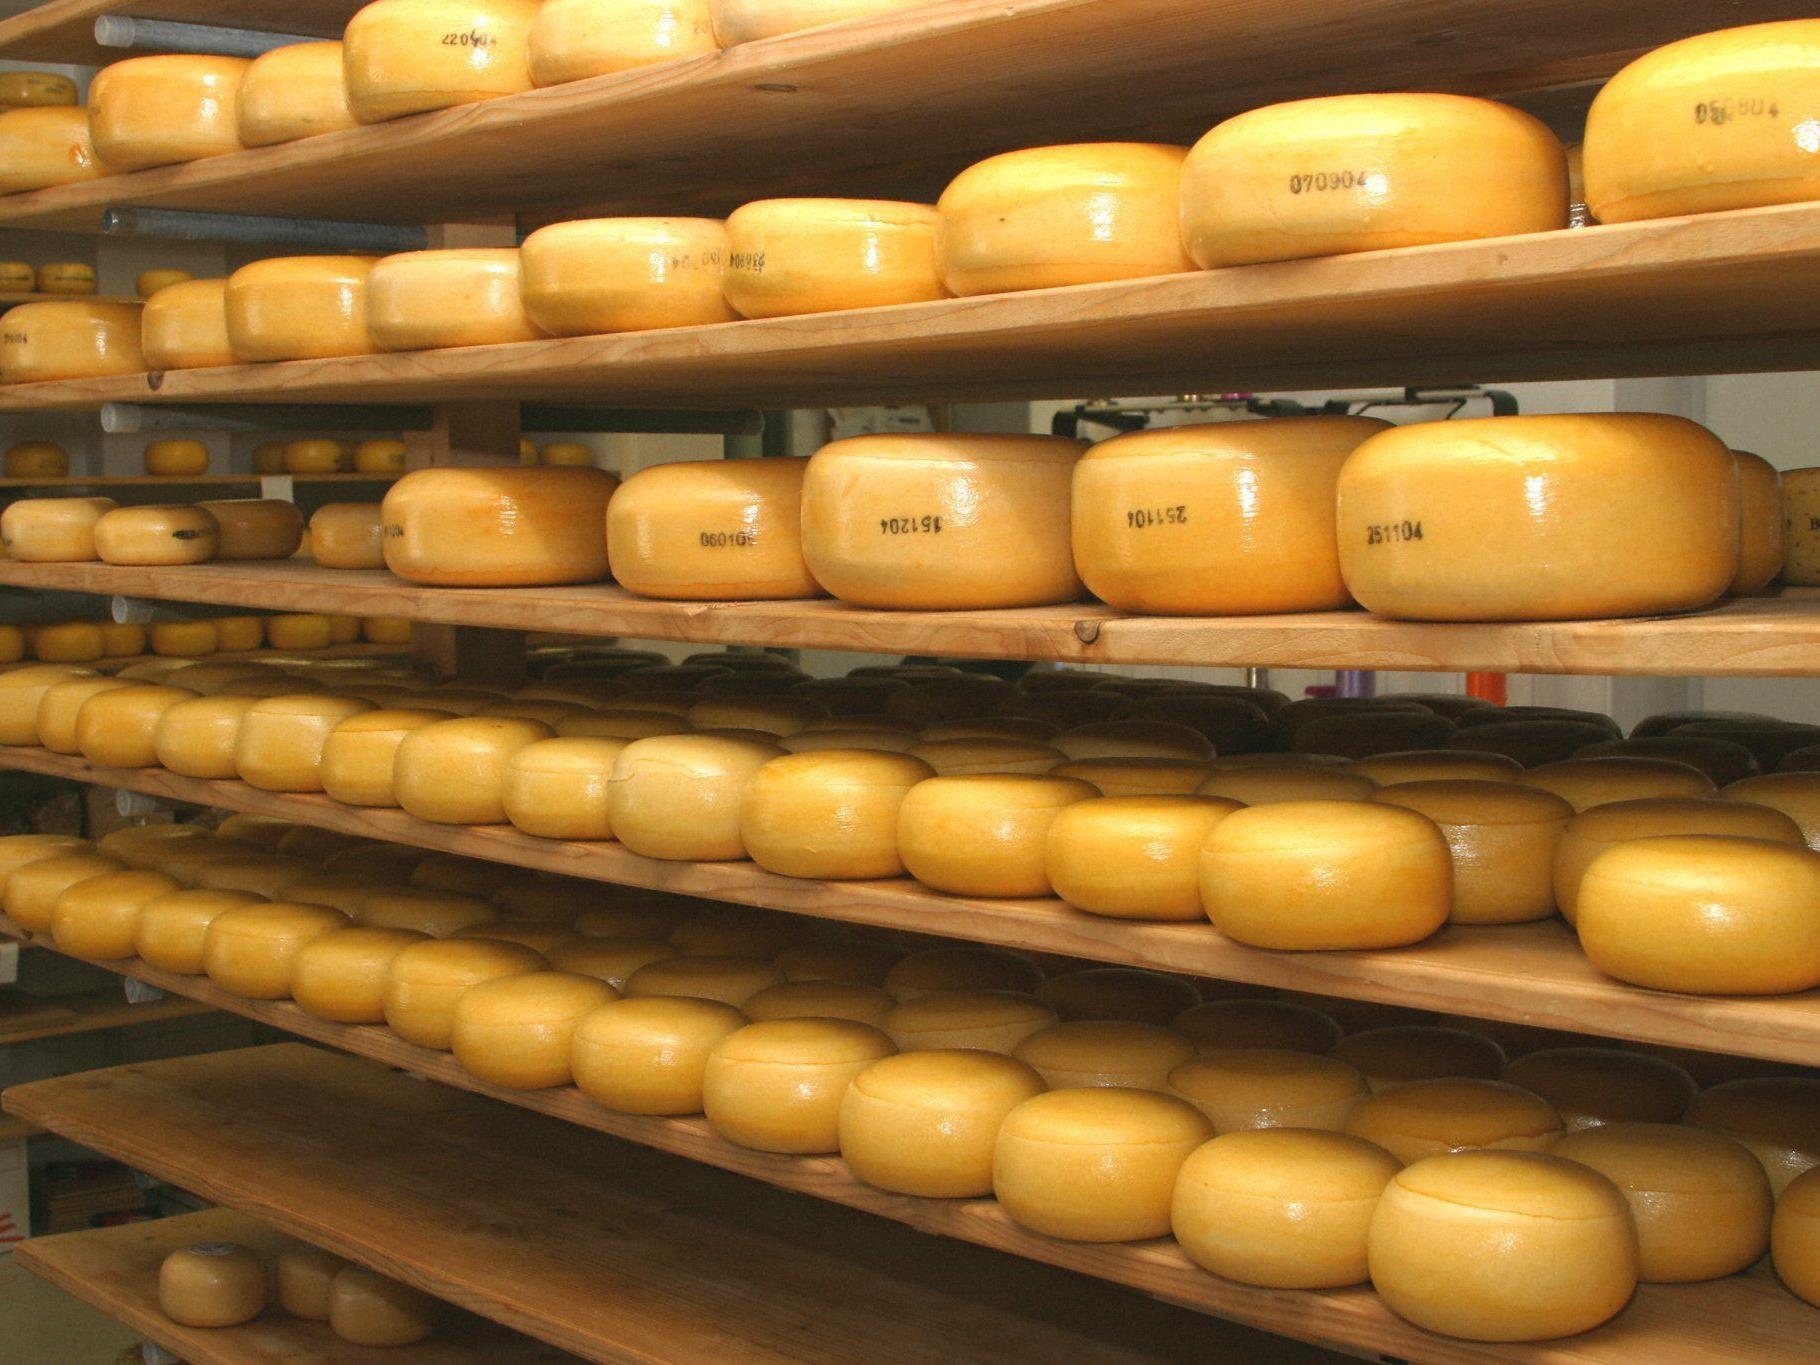 Rund 100 Mitarbeiter sollen im geplanten "Käse-Kompetenzzentrum" wie bisher die Schnitt- und Hartkäsesorten "Bergkäse", "Gouda" und vor allem "Emmentaler" erzeugen.